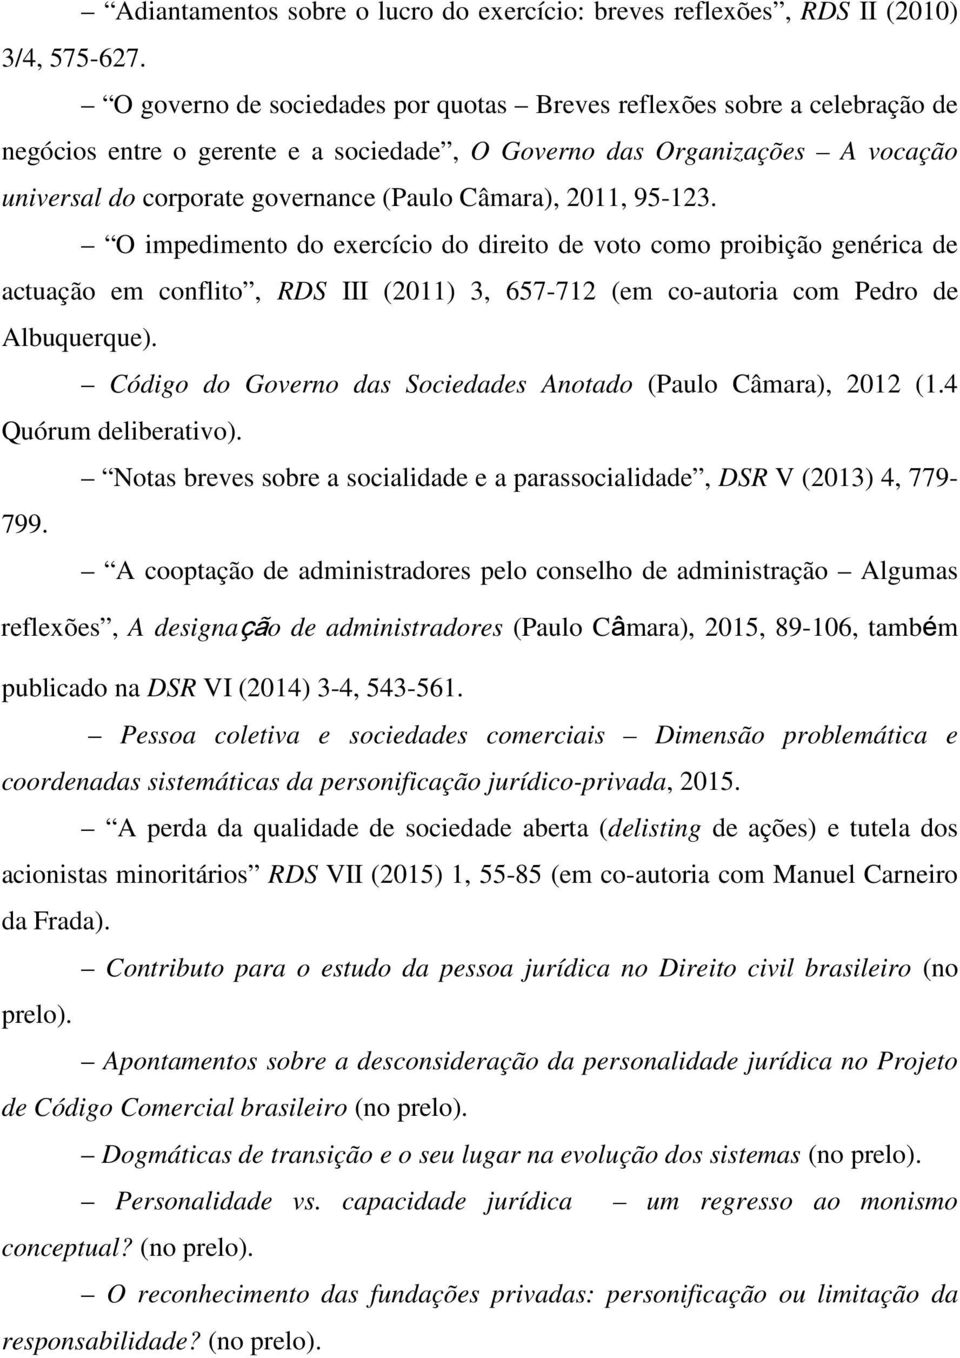 Câmara), 2011, 95-123. O impedimento do exercício do direito de voto como proibição genérica de actuação em conflito, RDS III (2011) 3, 657-712 (em co-autoria com Pedro de Albuquerque).